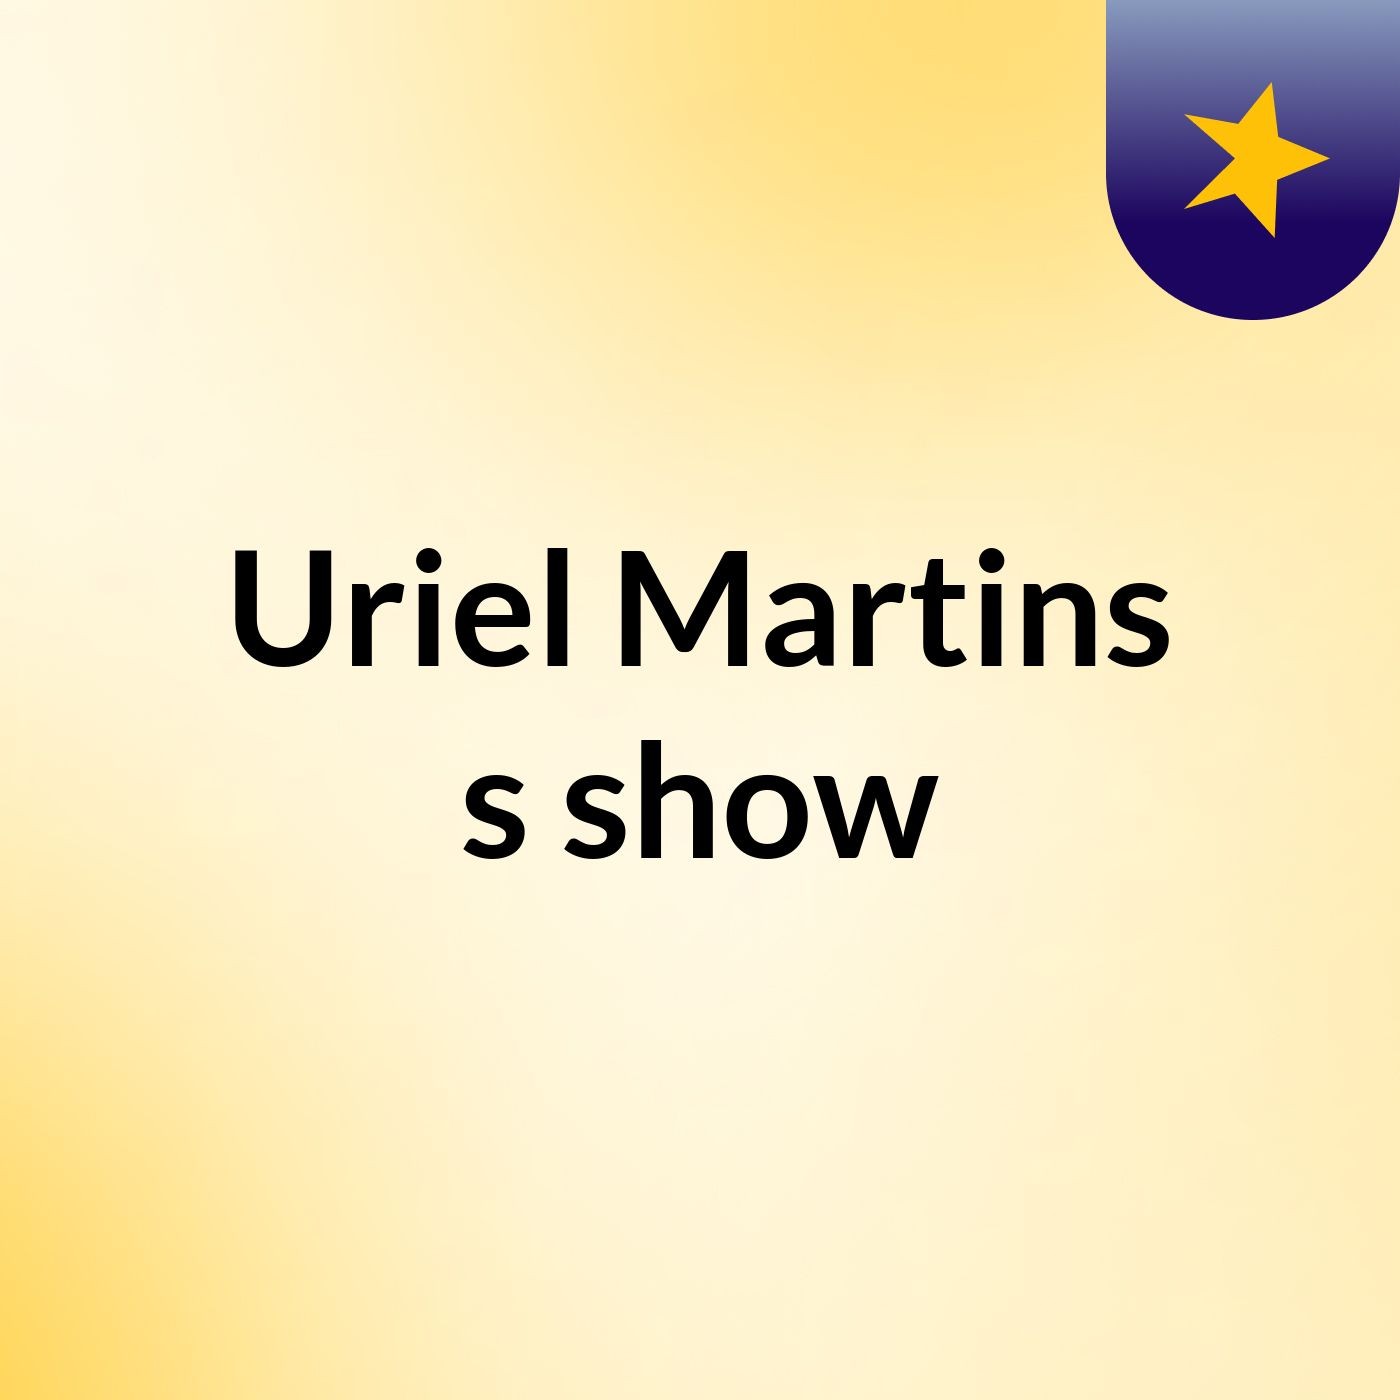 Uriel Martins's show